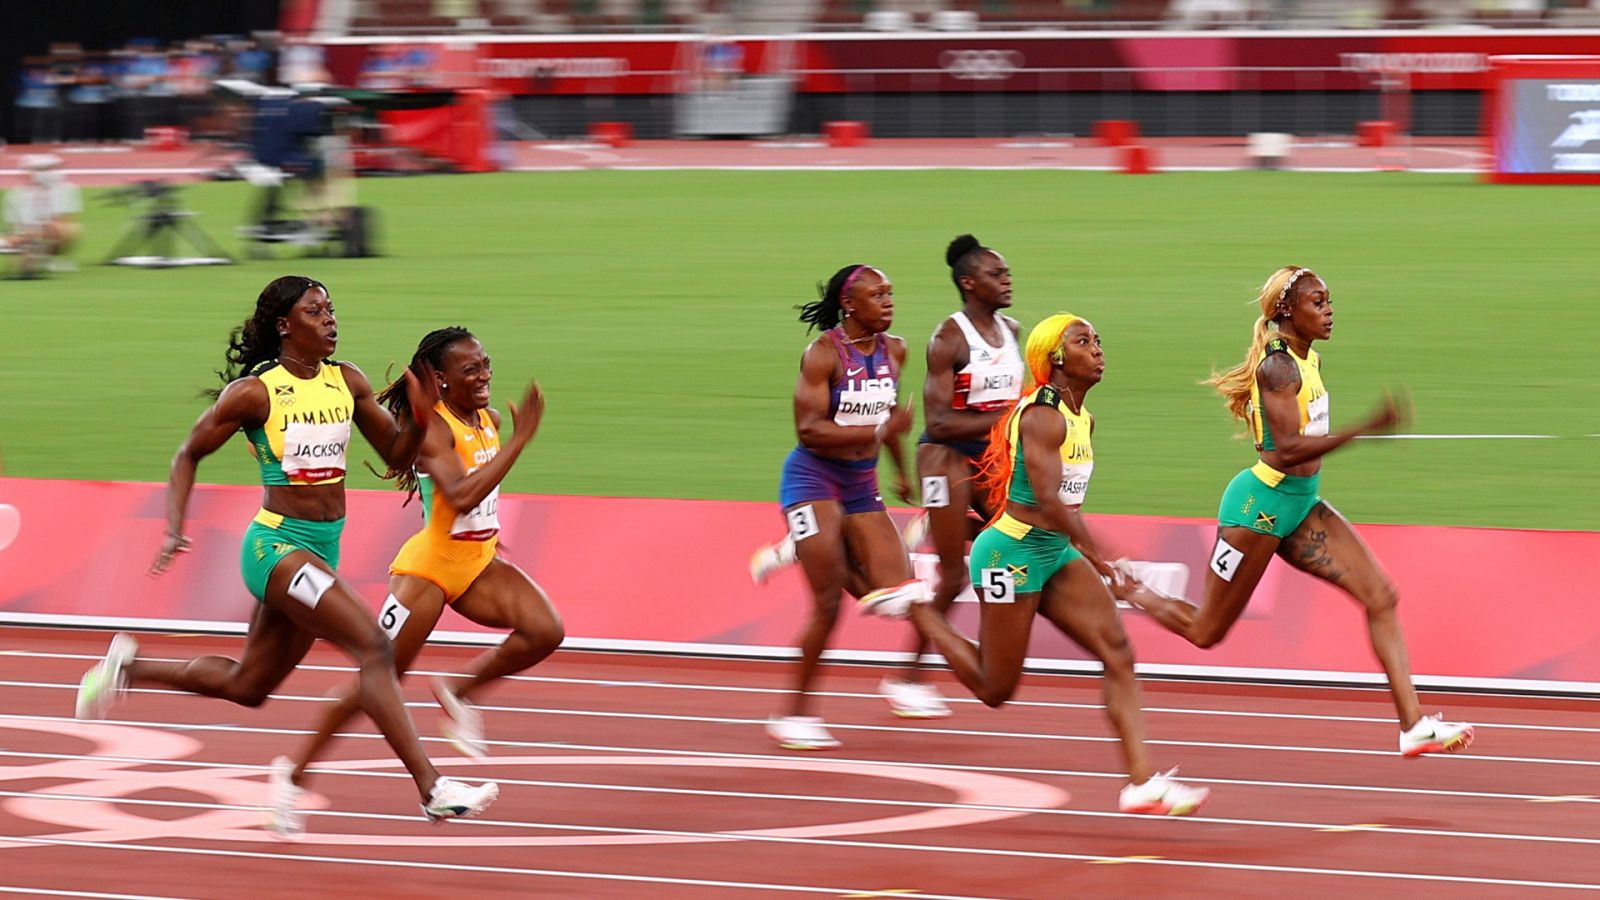 Atletismo: Final femenina 100 metros lisos | Tokio 2020